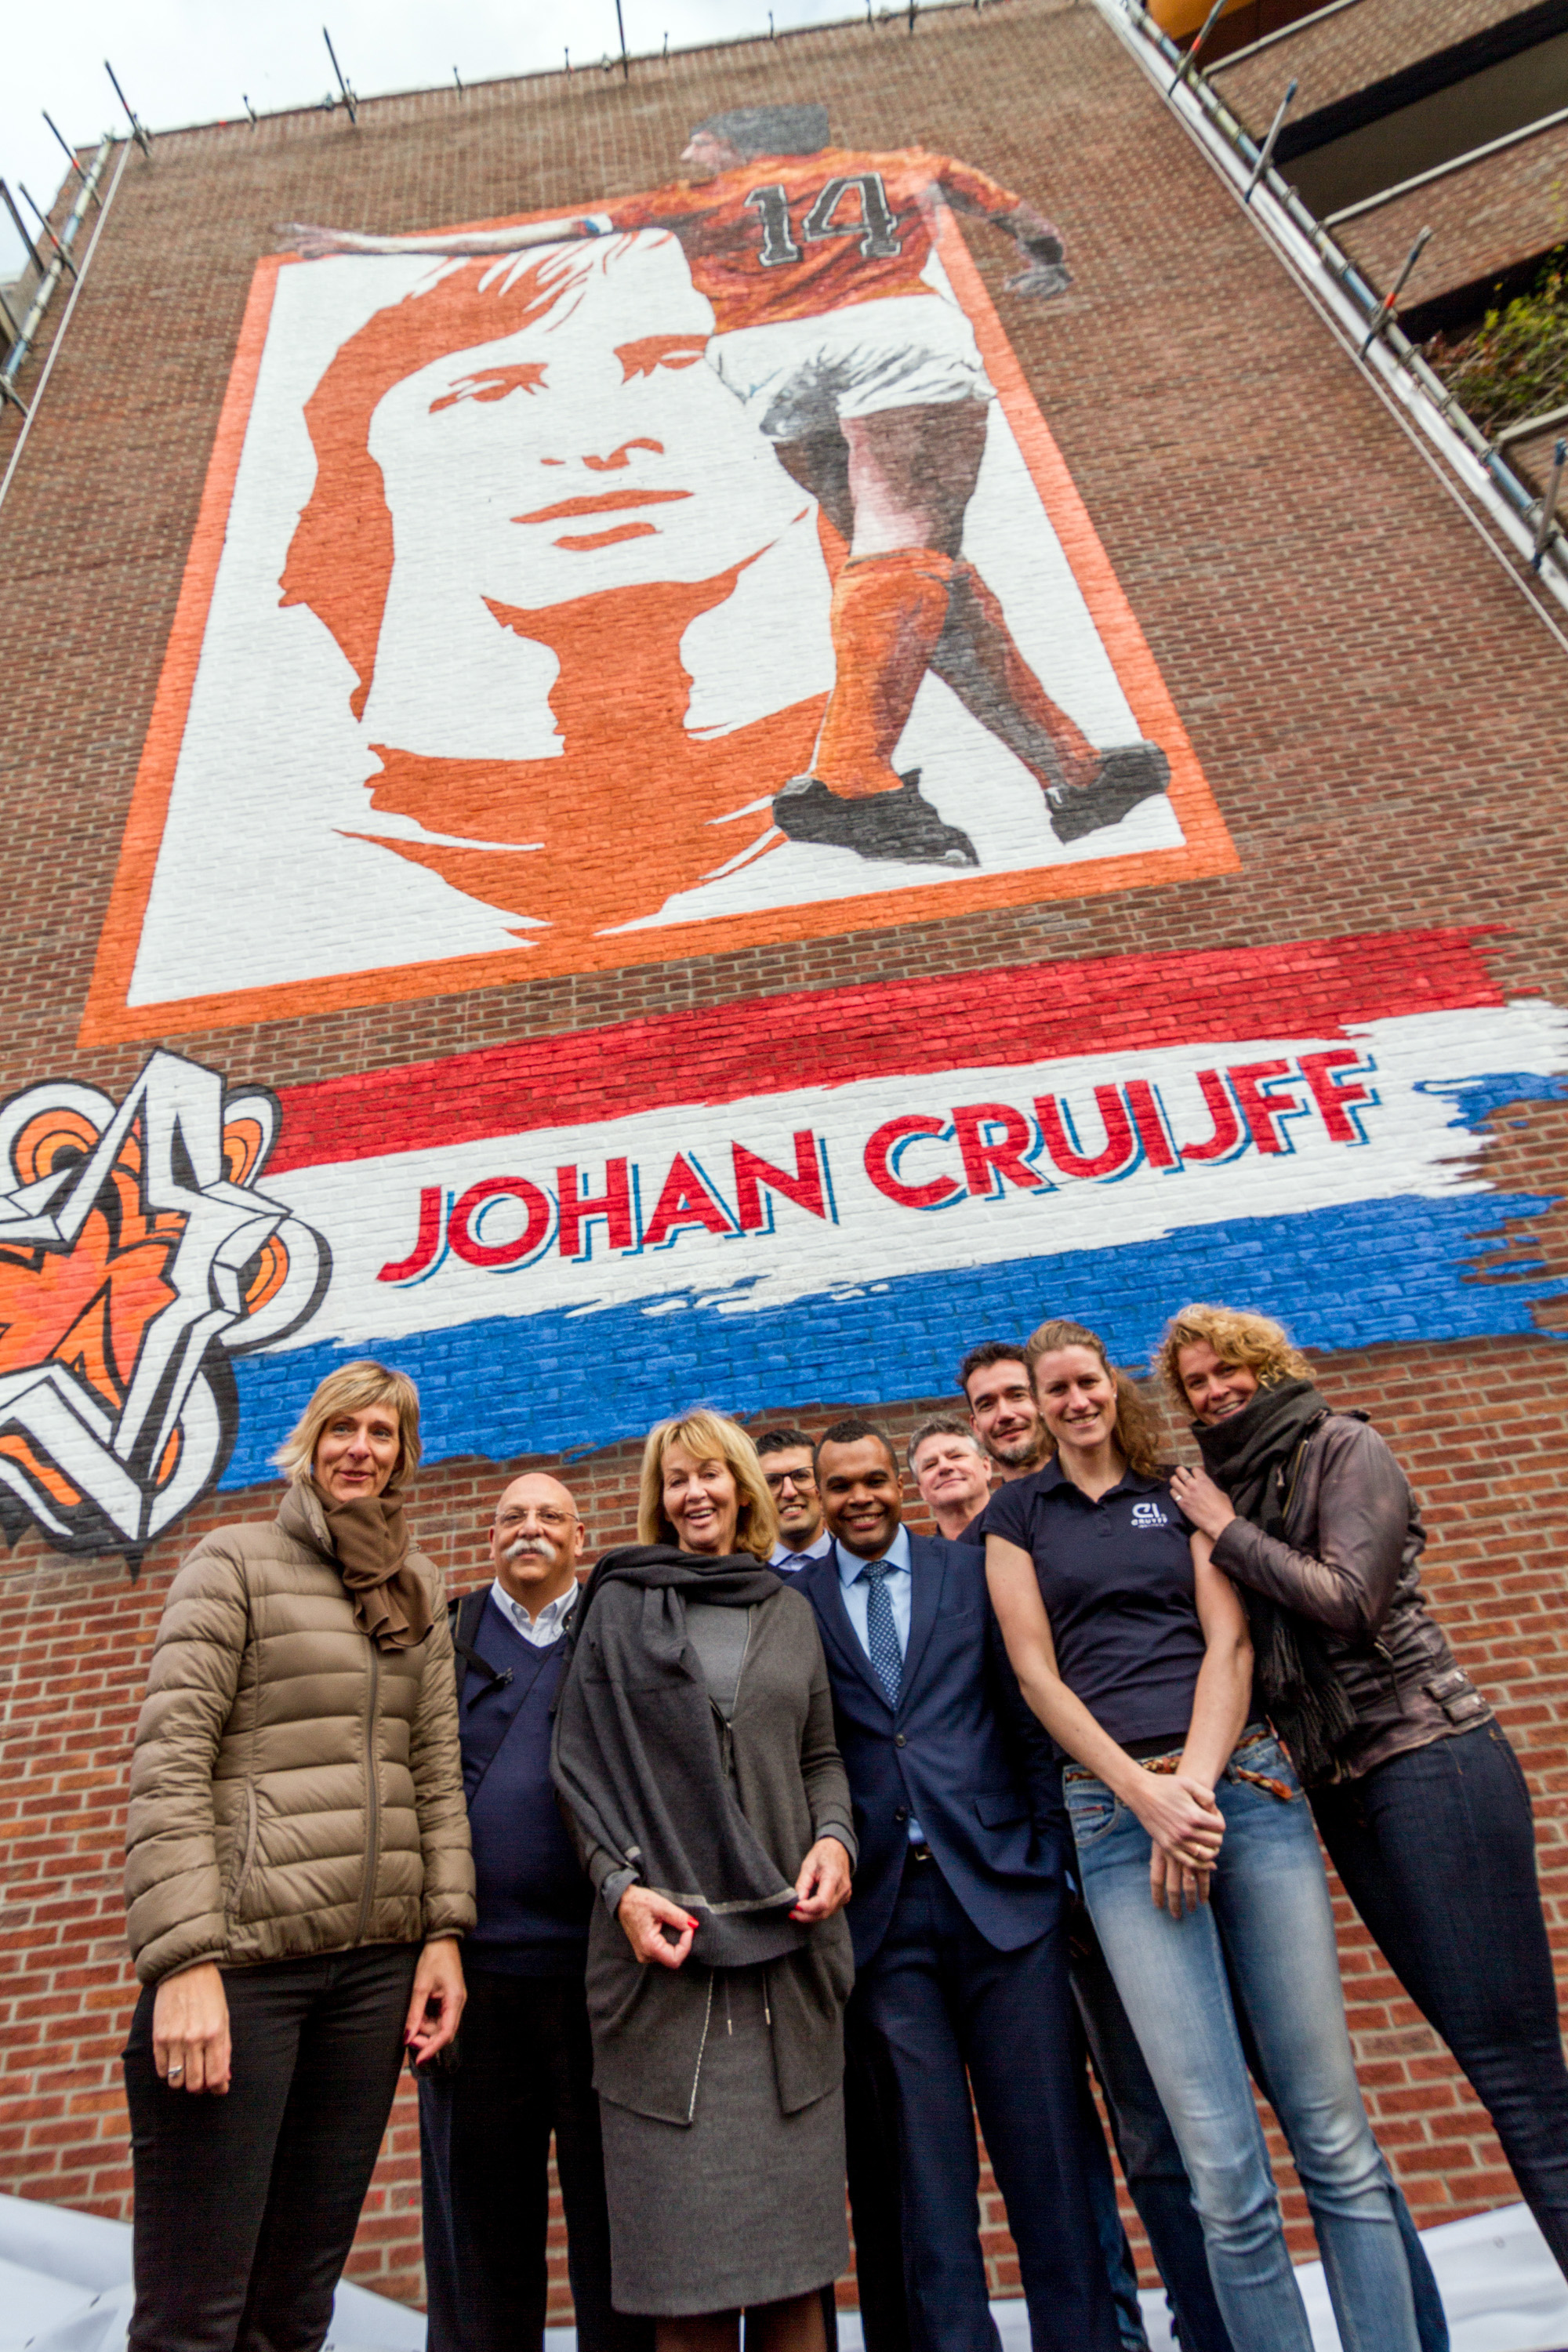 Indrukwekkende muurschildering van Johan Cruyff verwelkomt bezoekers van De Meer - Johan Cruyff Institute